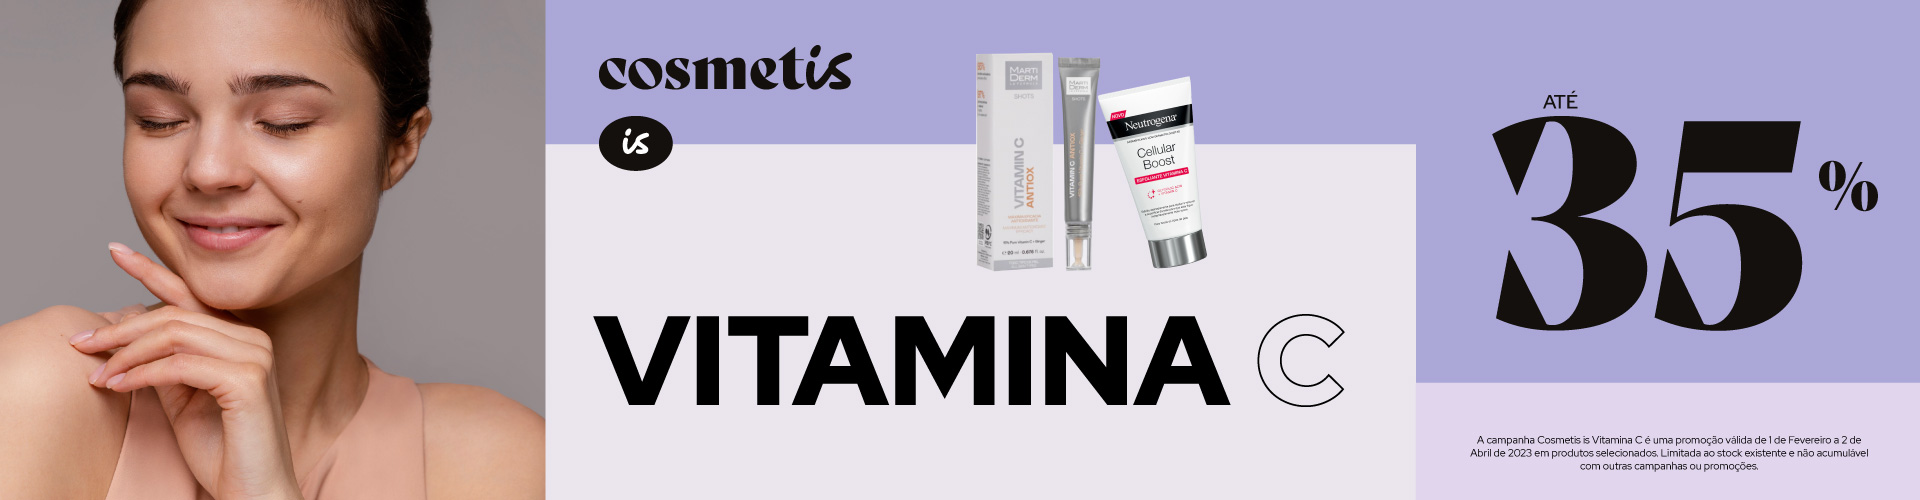 Cosmetis is Vitamina C